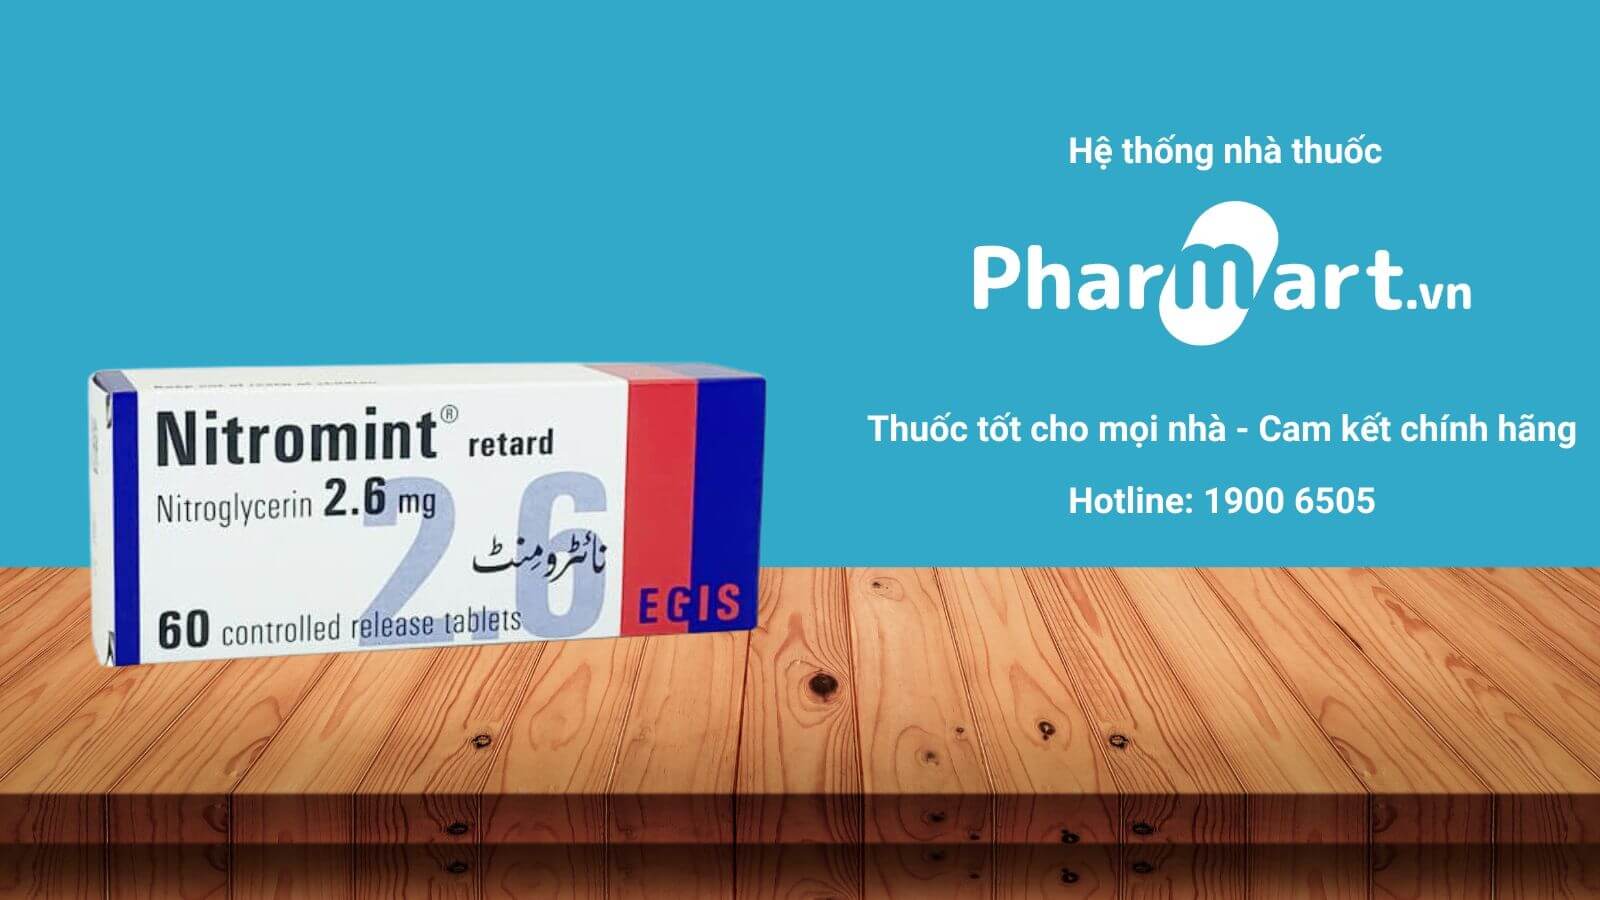  Pharmart.vn - Địa chỉ mua hàng uy tín, chất lượng